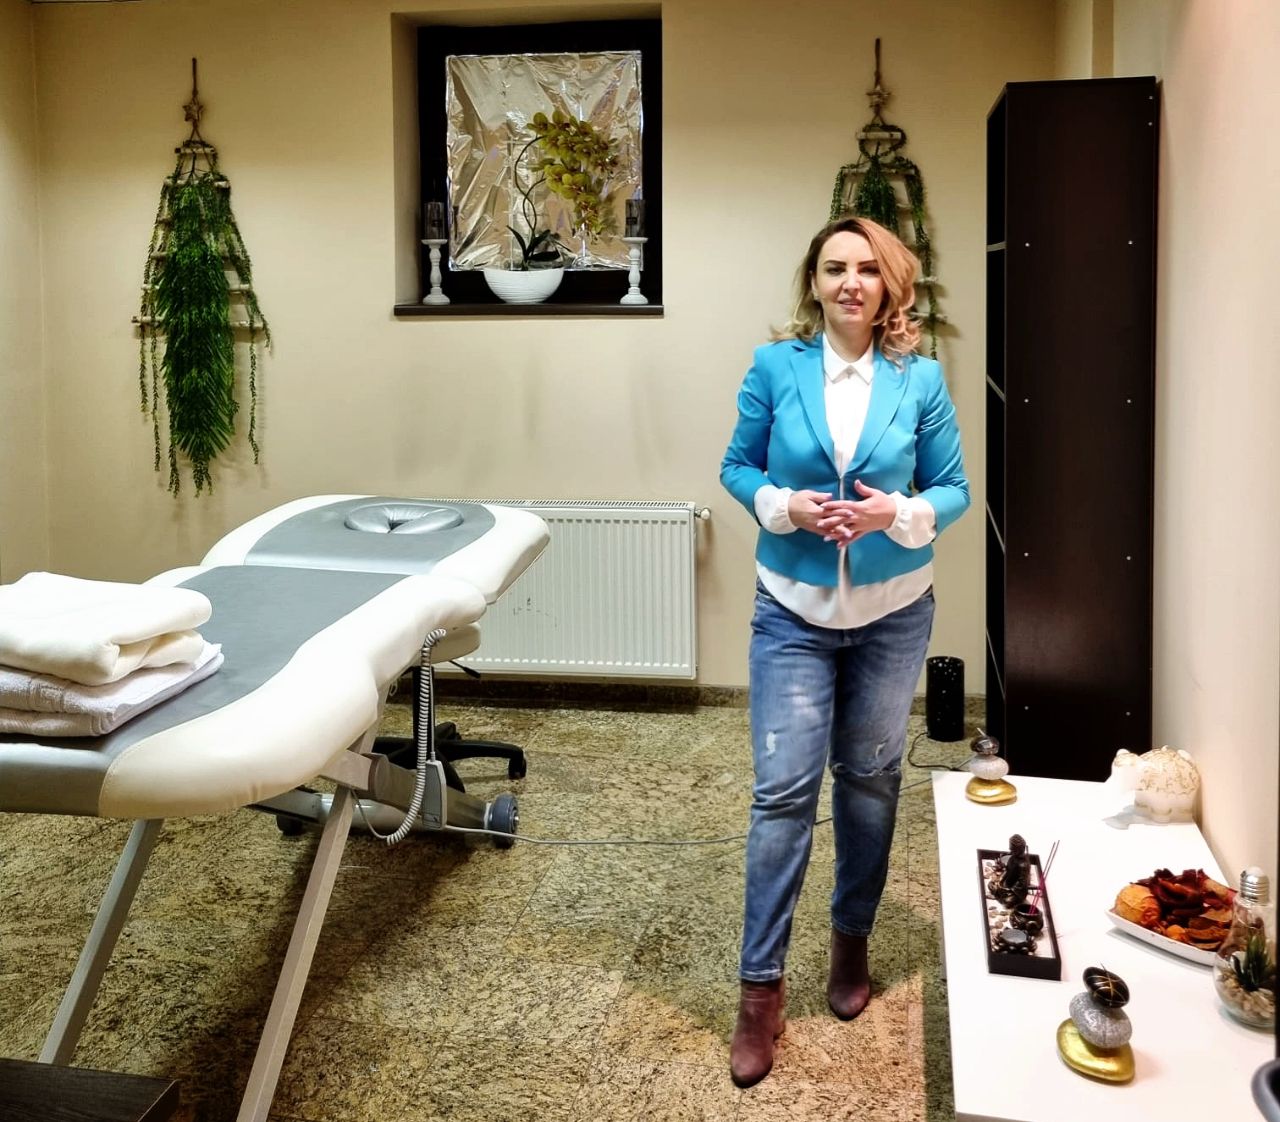 Clinica Ambasador Med oferă servicii medicale complete și terapii pentru suflet. Dizarmonia trupului, e dezechilibrul sufletului. Livia Julia Gomes: “Redăm demnitatea pacientului”